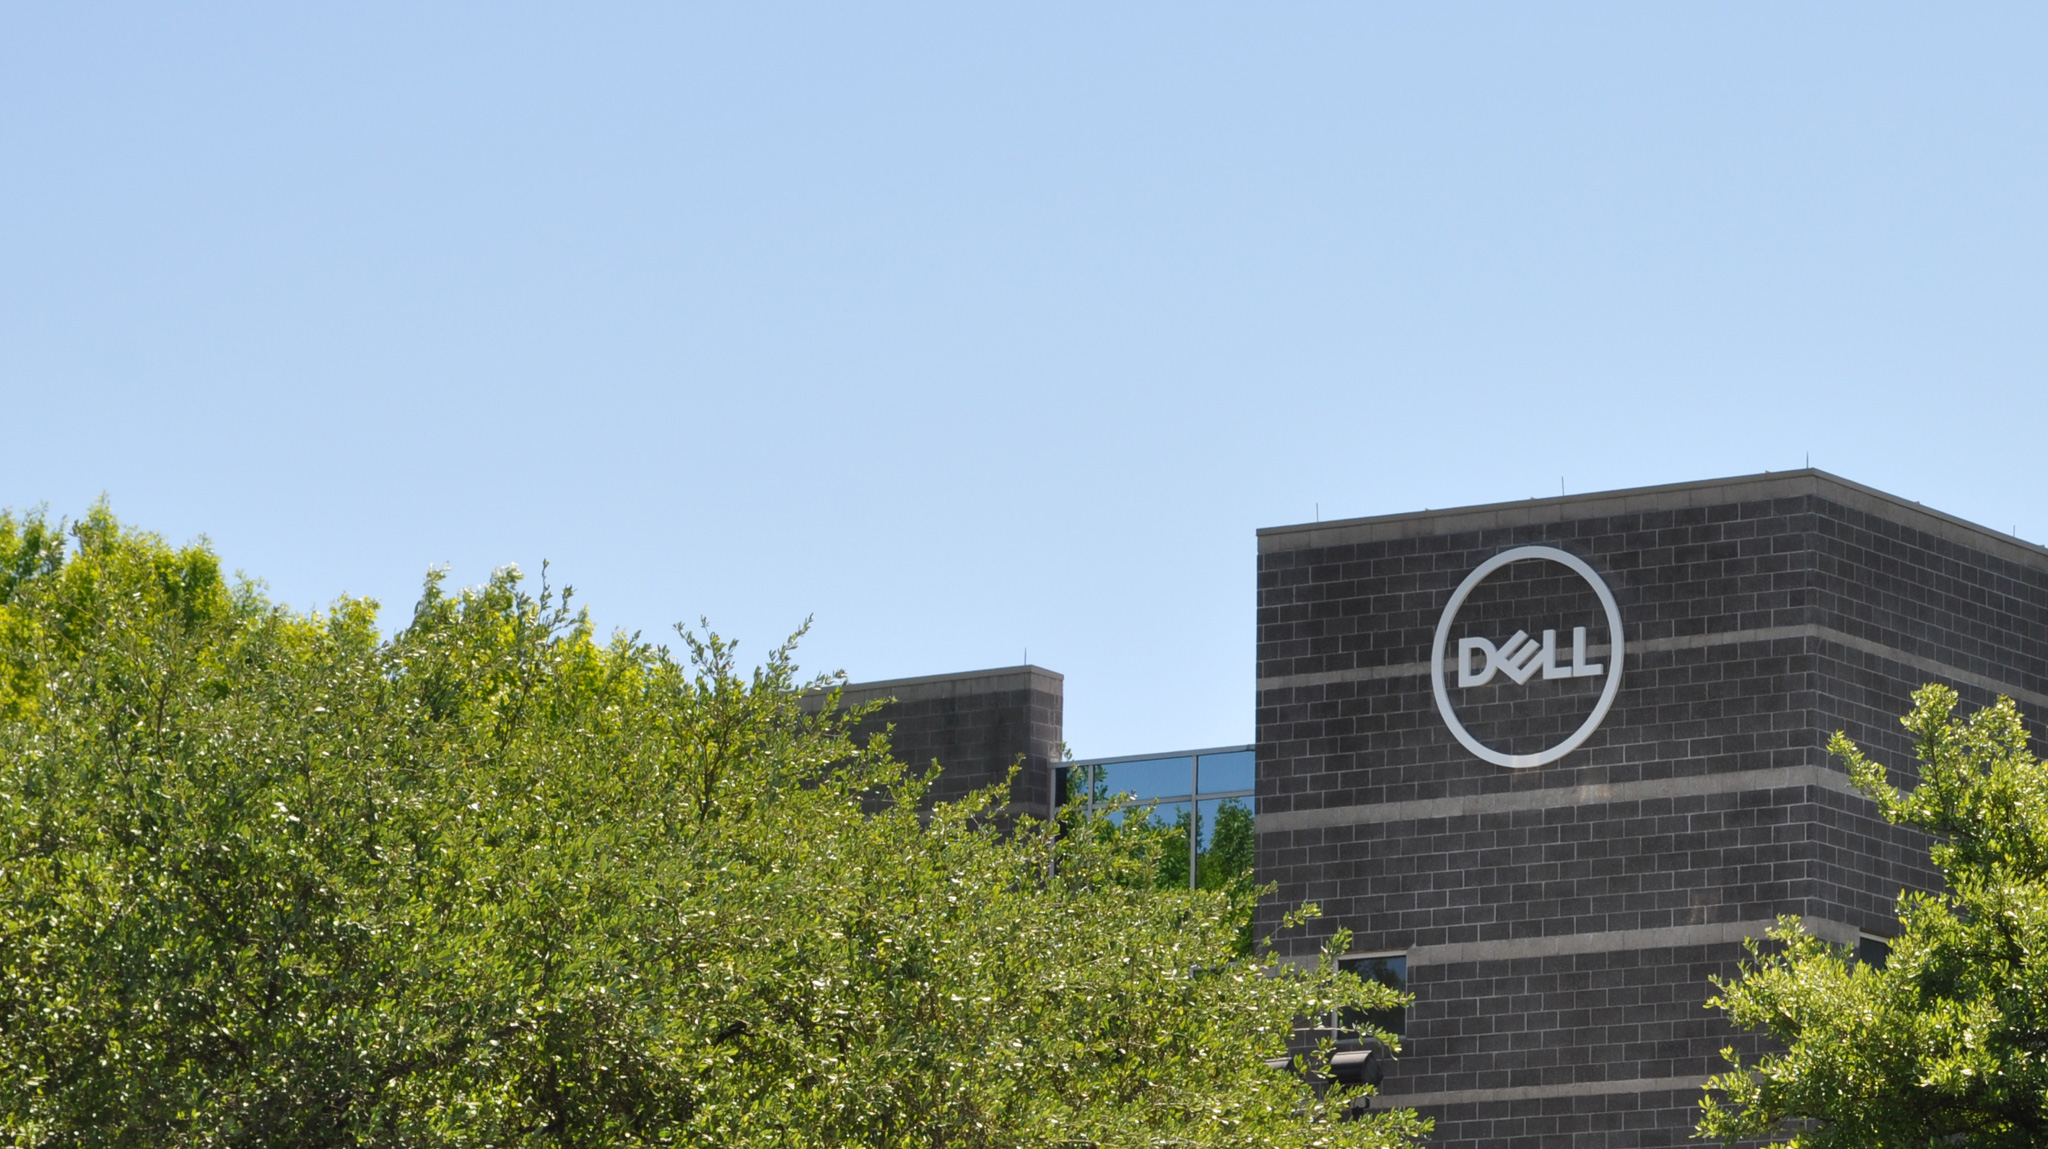 Dell Technologies hỗ trợ các Nhà cung cấp dịch vụ viễn thông chuyển đổi để nắm bắt những cơ hội mới tại vùng Biên